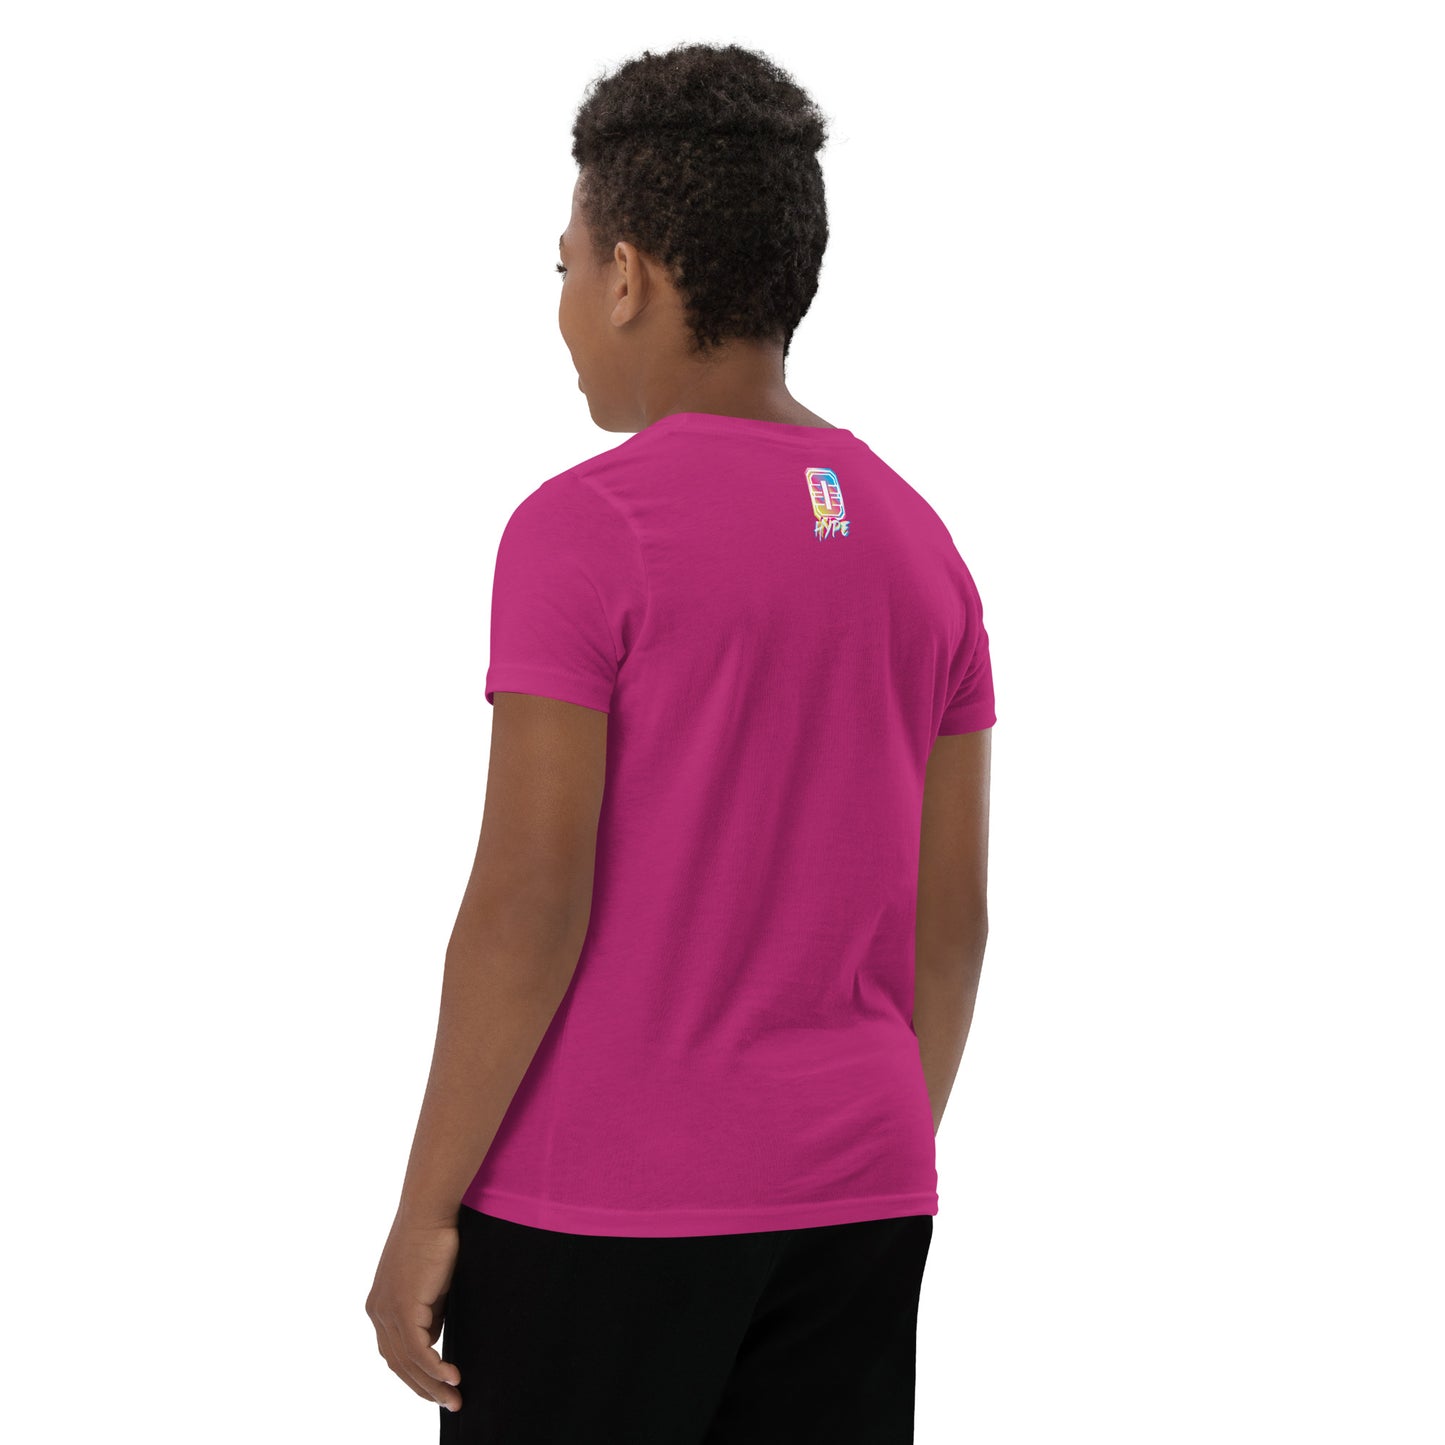 OM Hype Summer Goals Pink Youth Short Sleeve T-Shirt